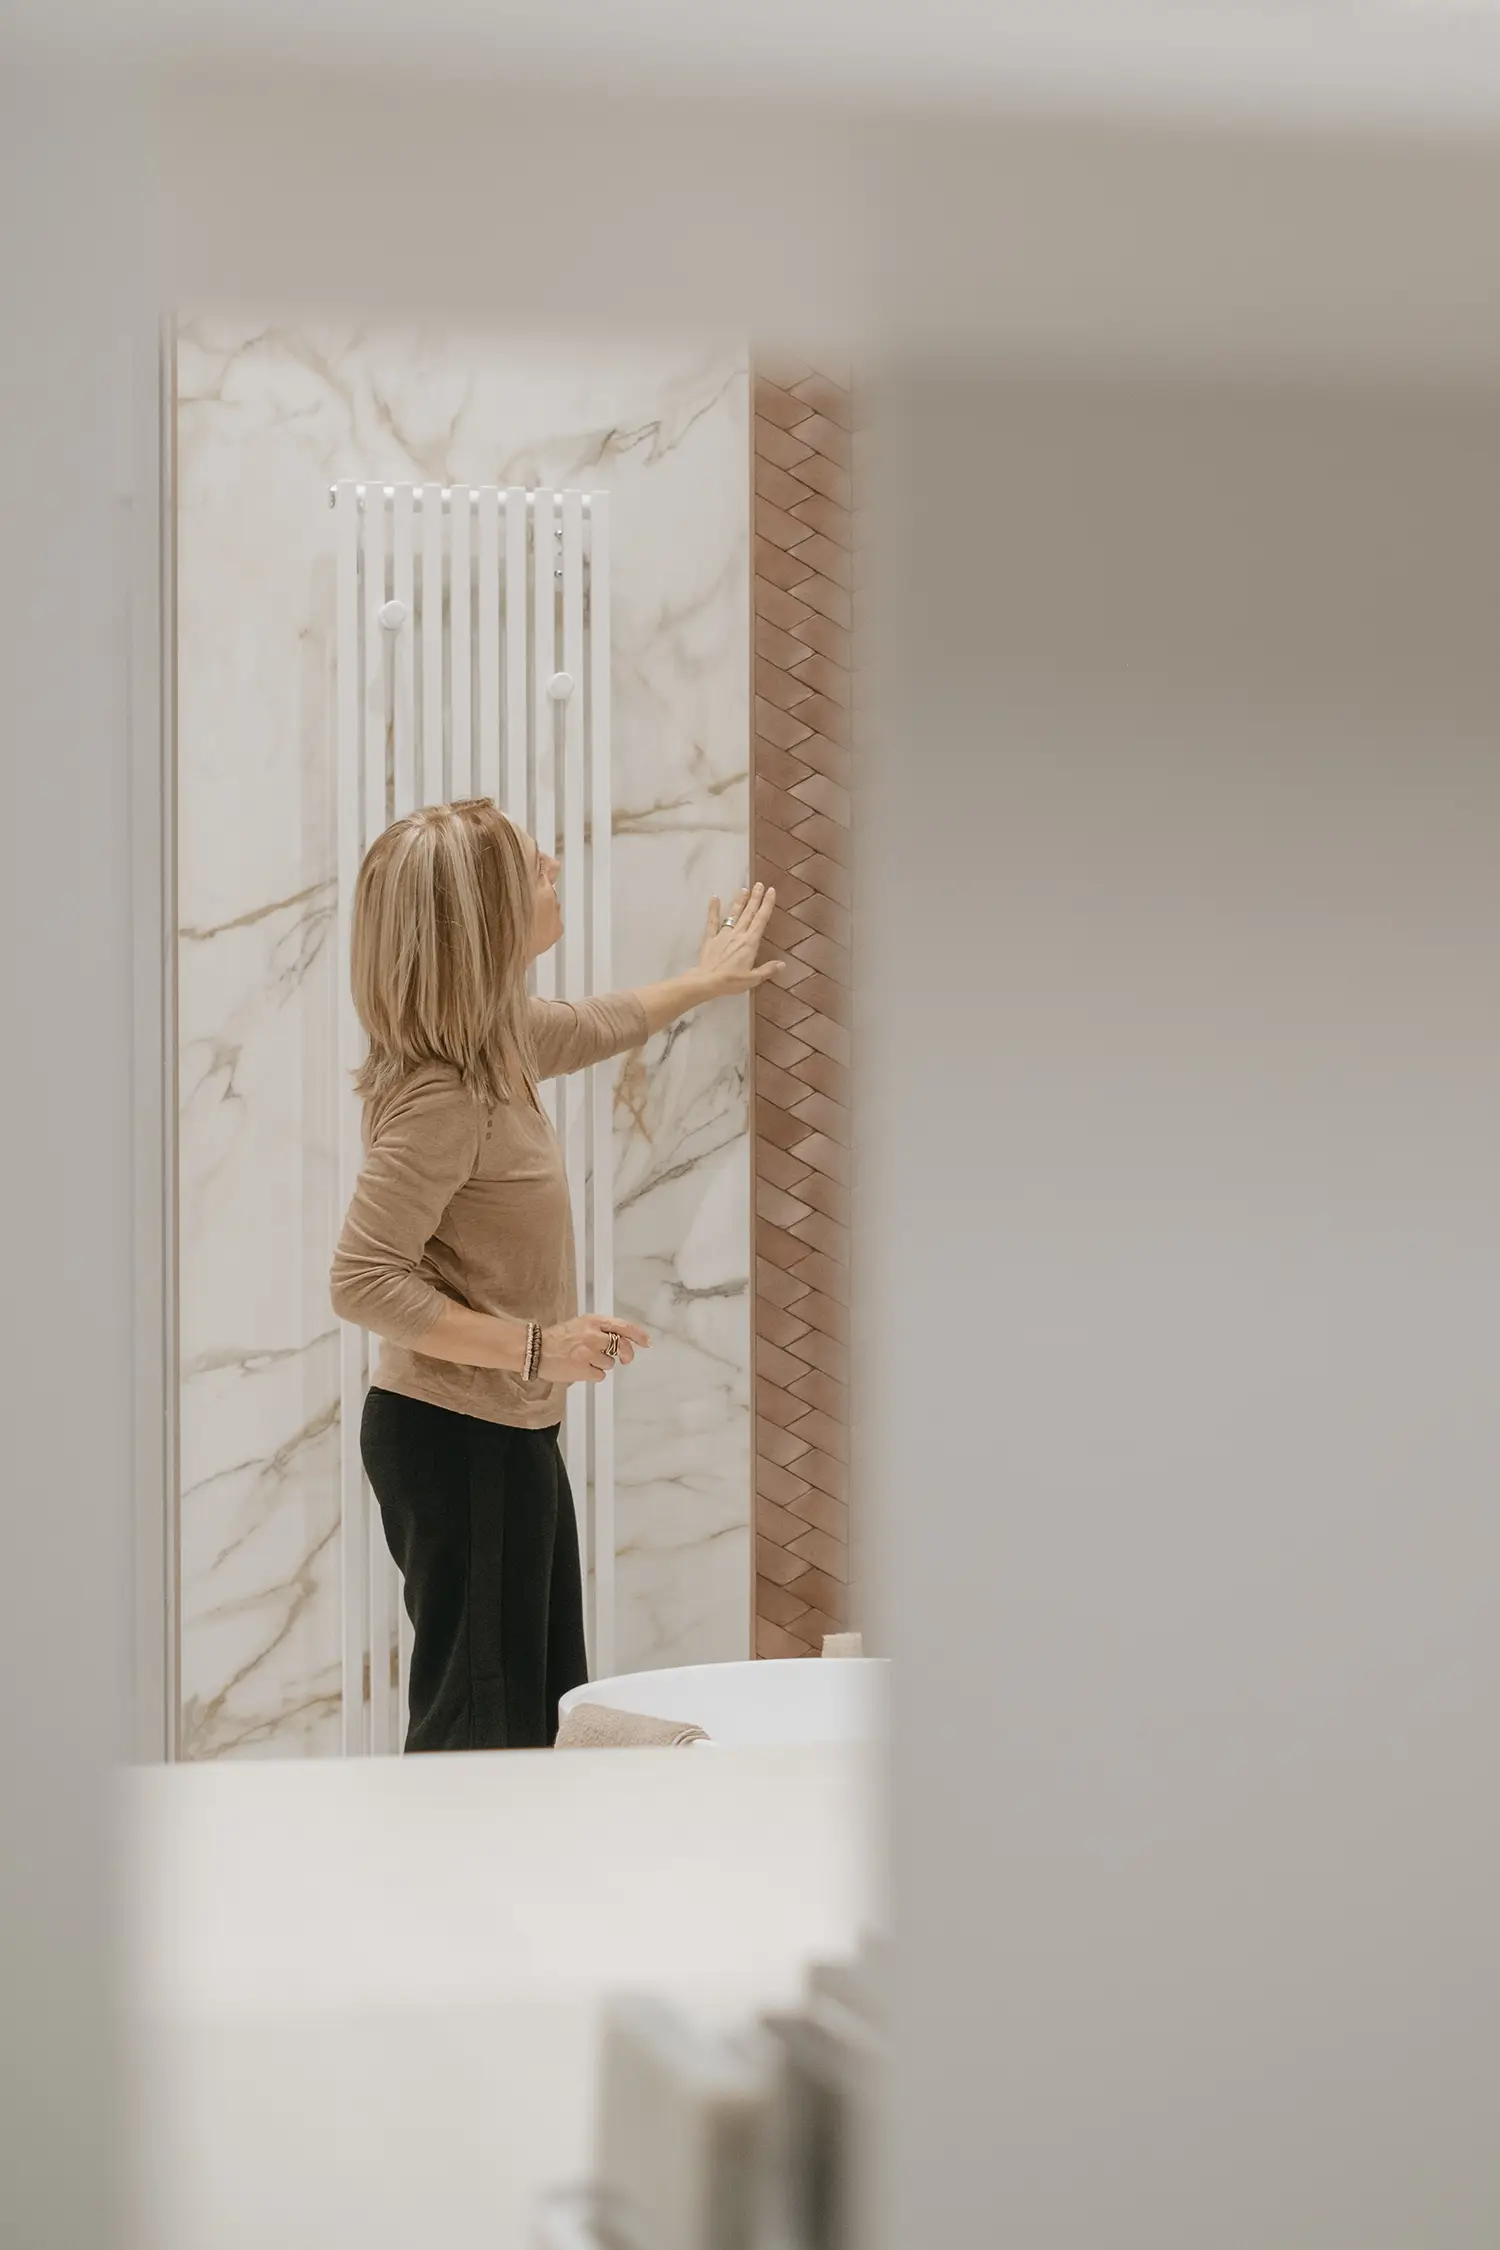 La designer di home interior Stefania Luraghi mentre verifica la posa di un rivestimento in ceramica, all'interno di un cantiere.